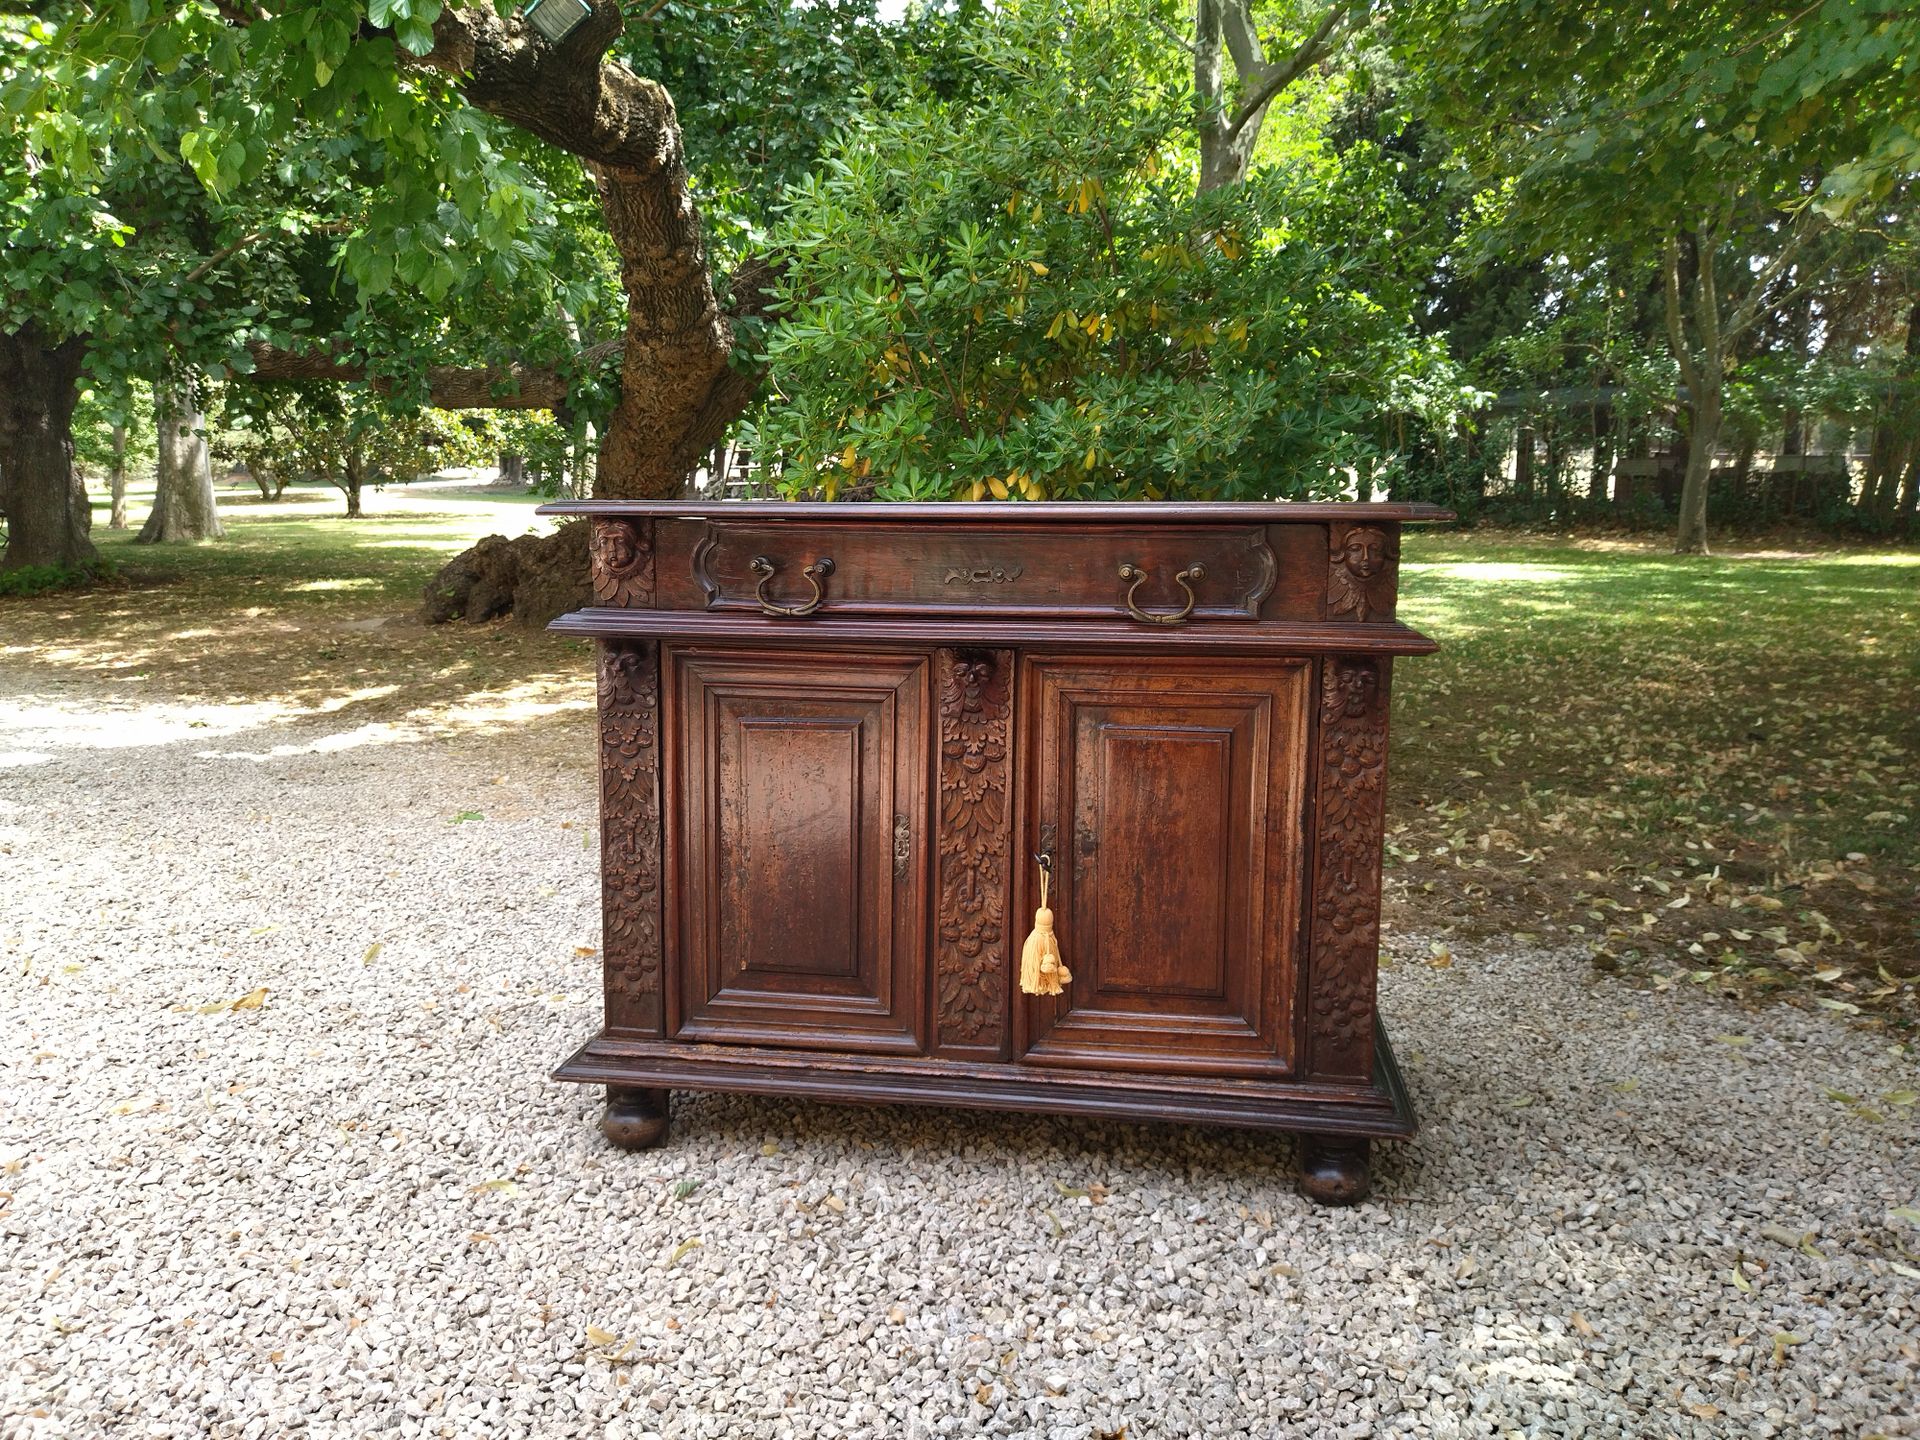 Null 一个模制和雕刻的胡桃木边柜，腰部有一个抽屉，两扇门上装饰着面具、叶子和水果。XVII时期（恢复使用）。96x121x59厘米